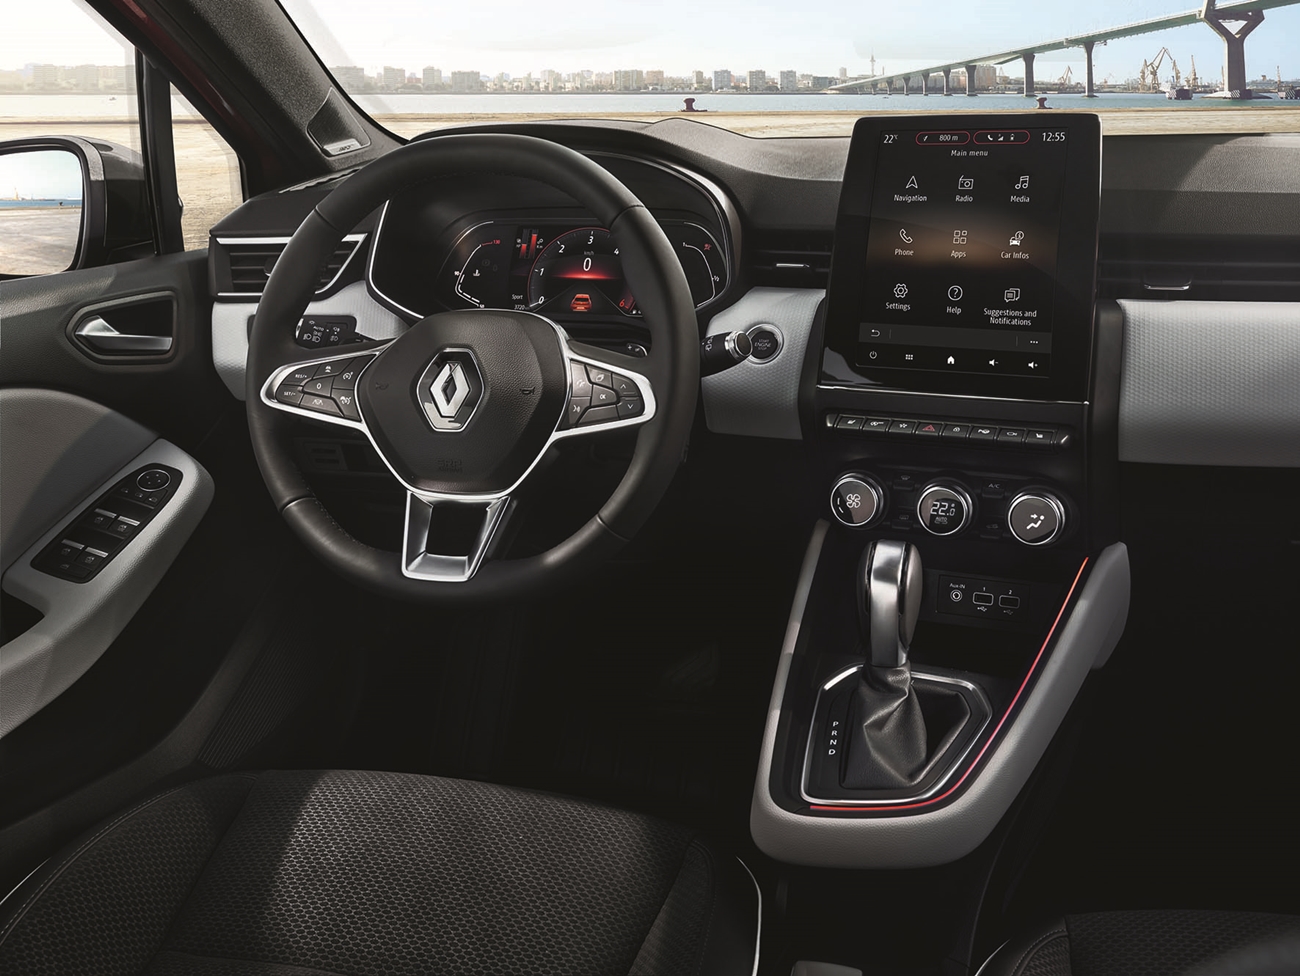 Nuevo interior del nuevo Renault Clio 2019